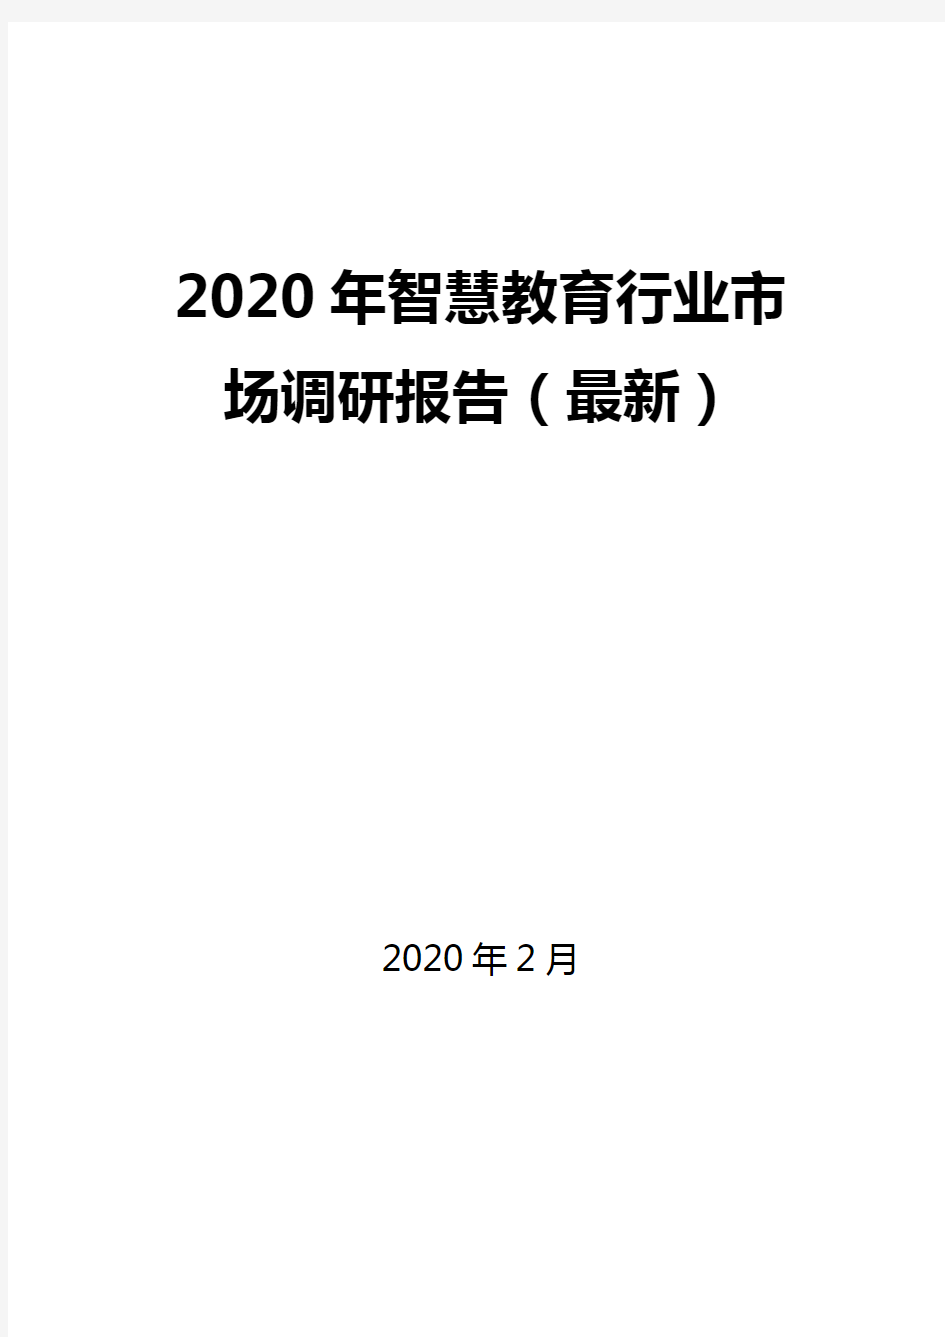 2020年智慧教育行业市场调研报告(最新)